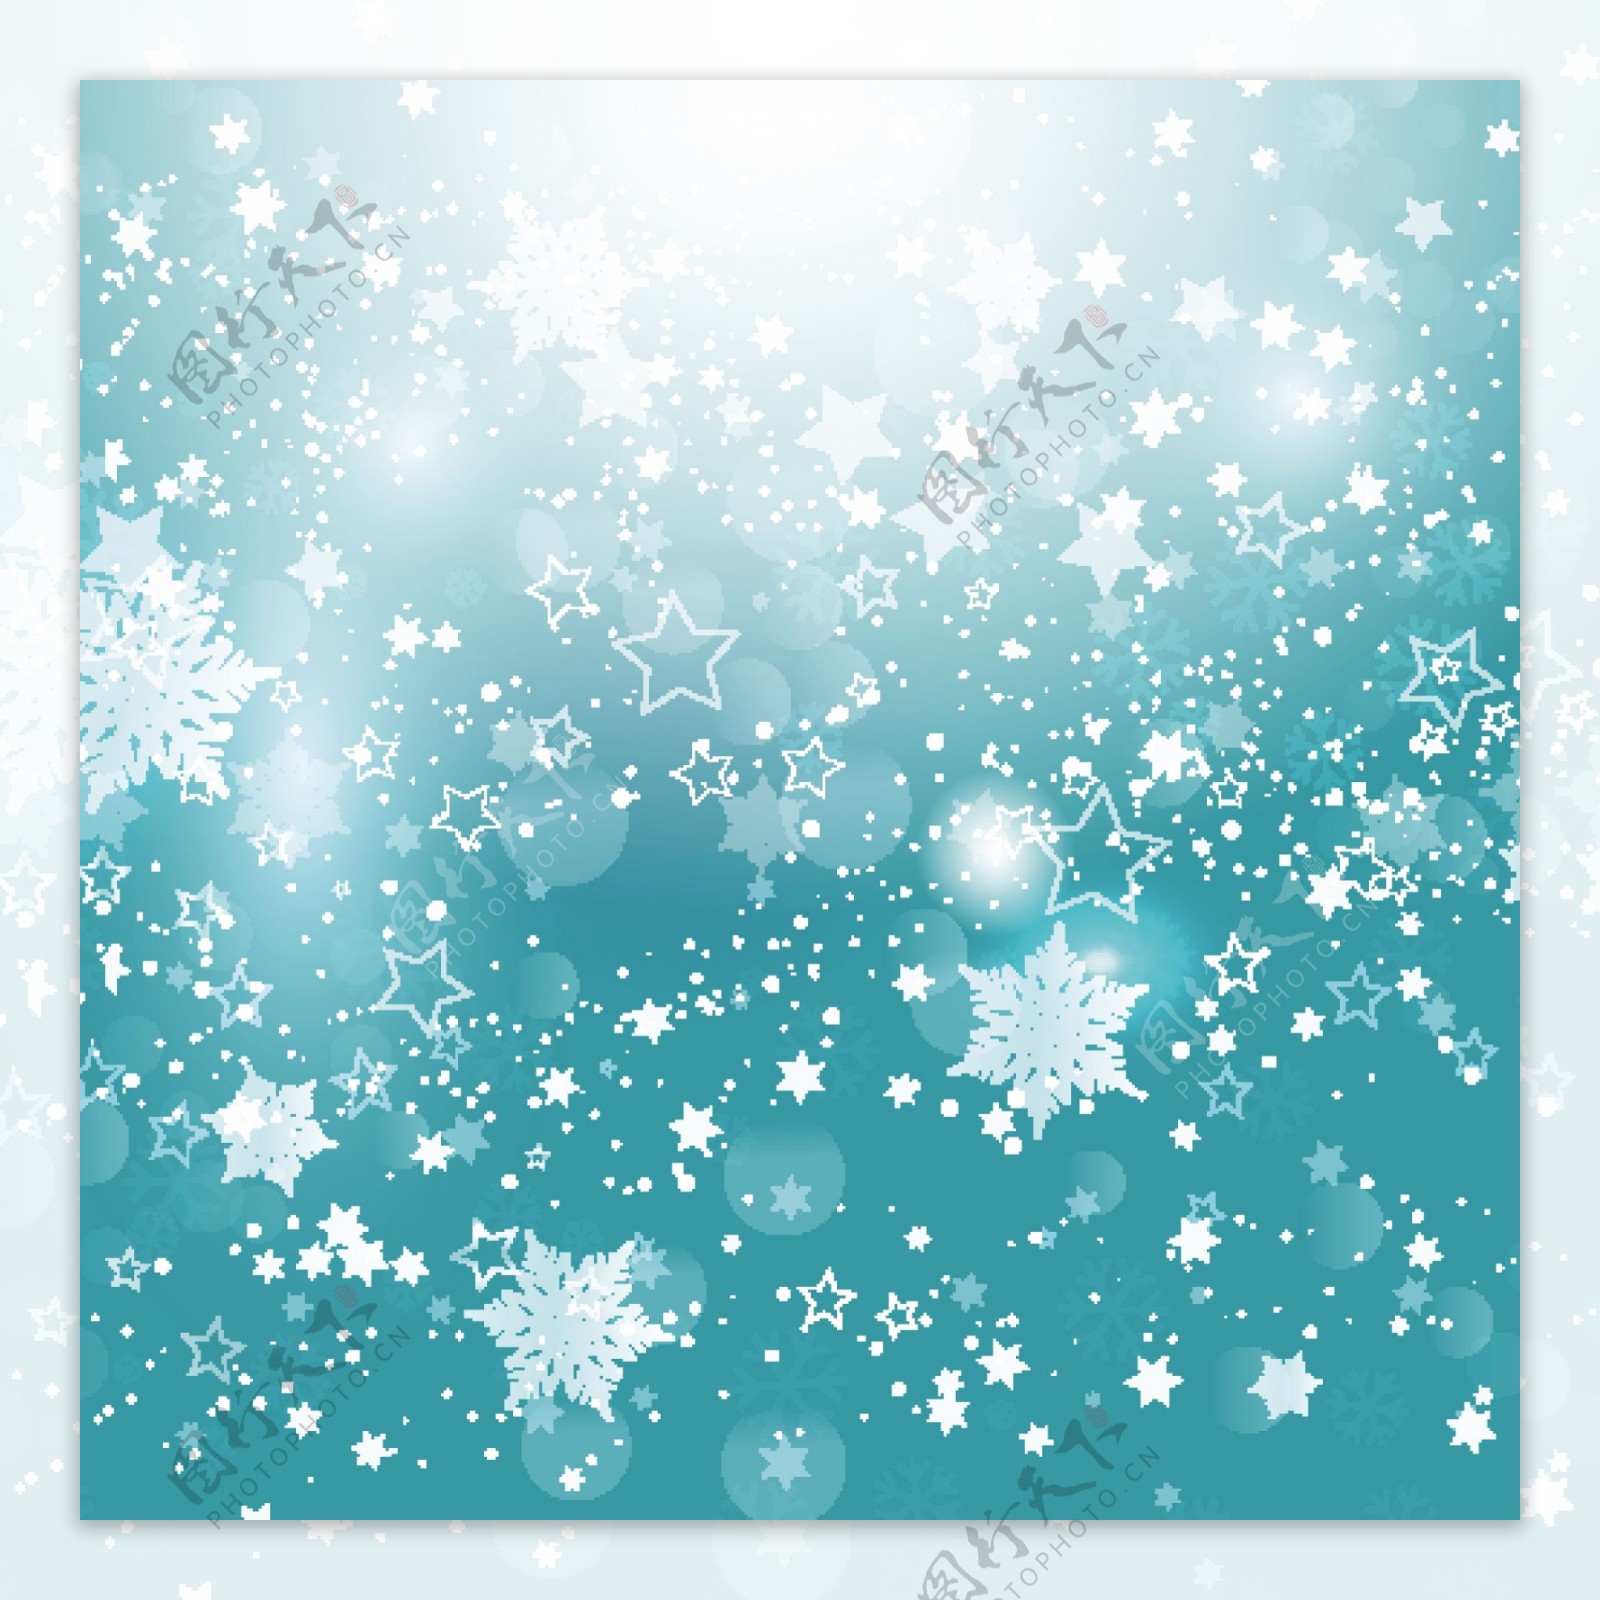 圣诞雪花和星星蓝色背景